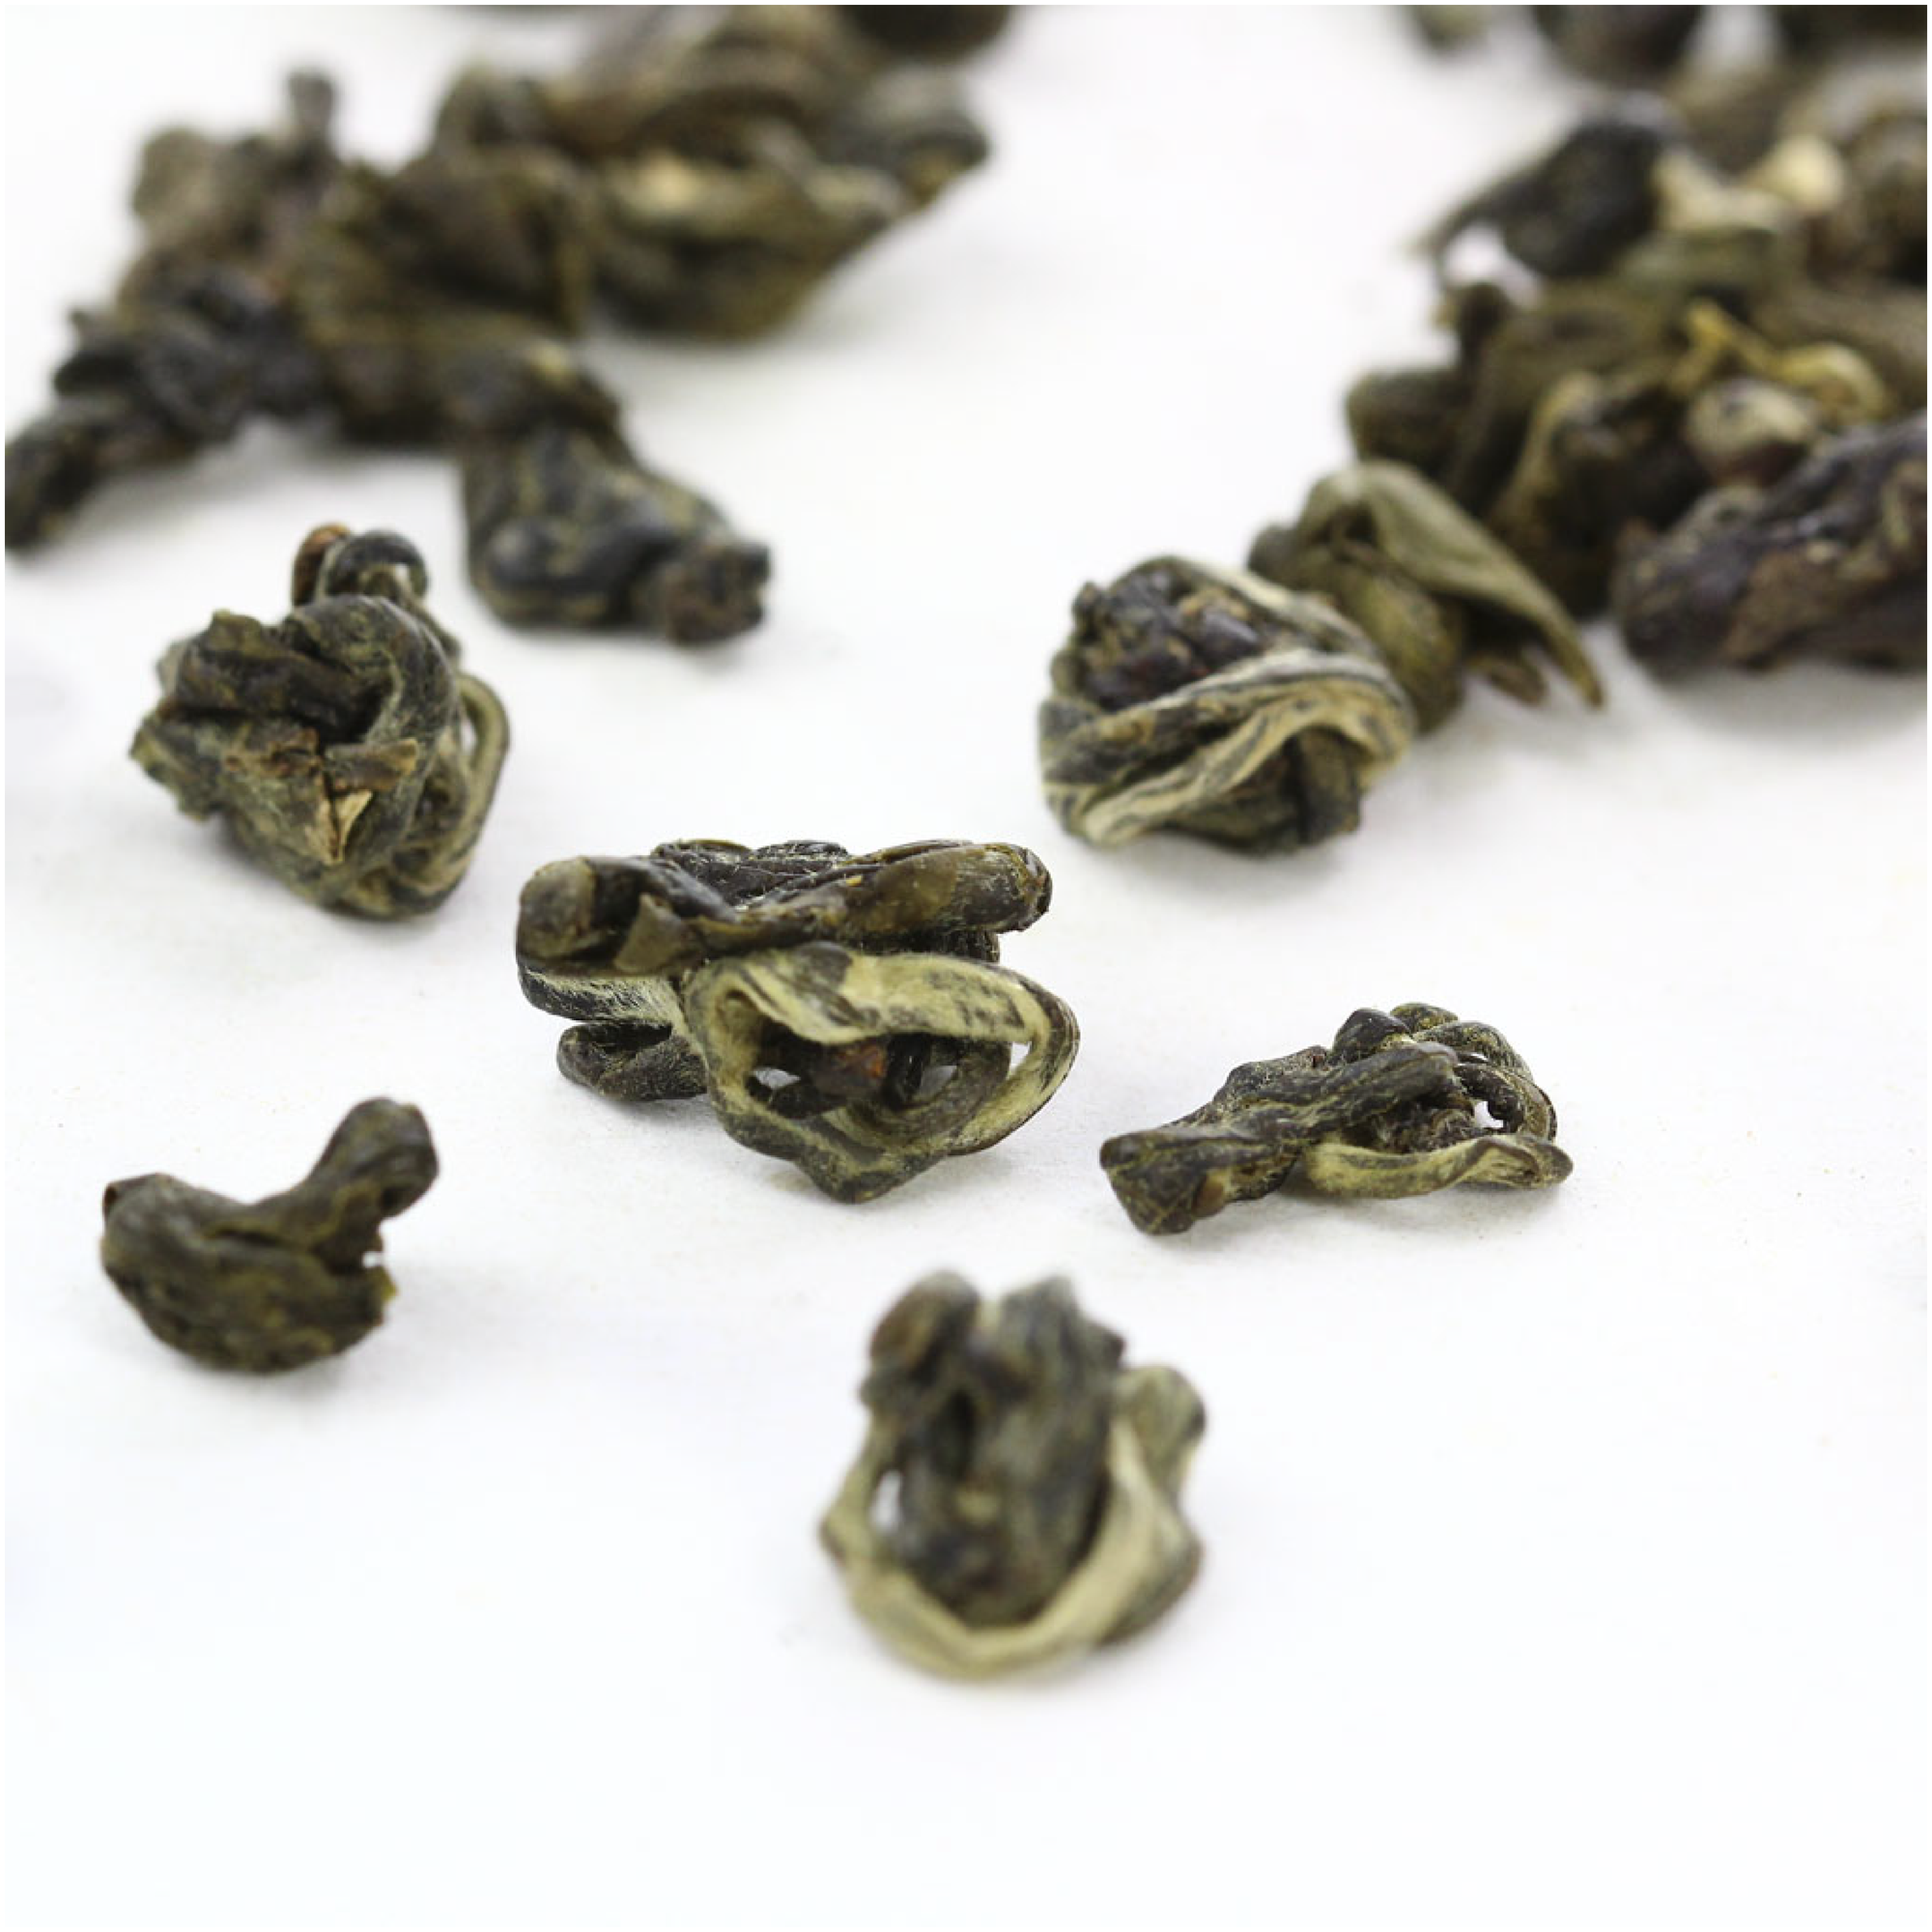 Китайский Зеленый чай - Чжень Ло. 100г. (Зеленая улитка)